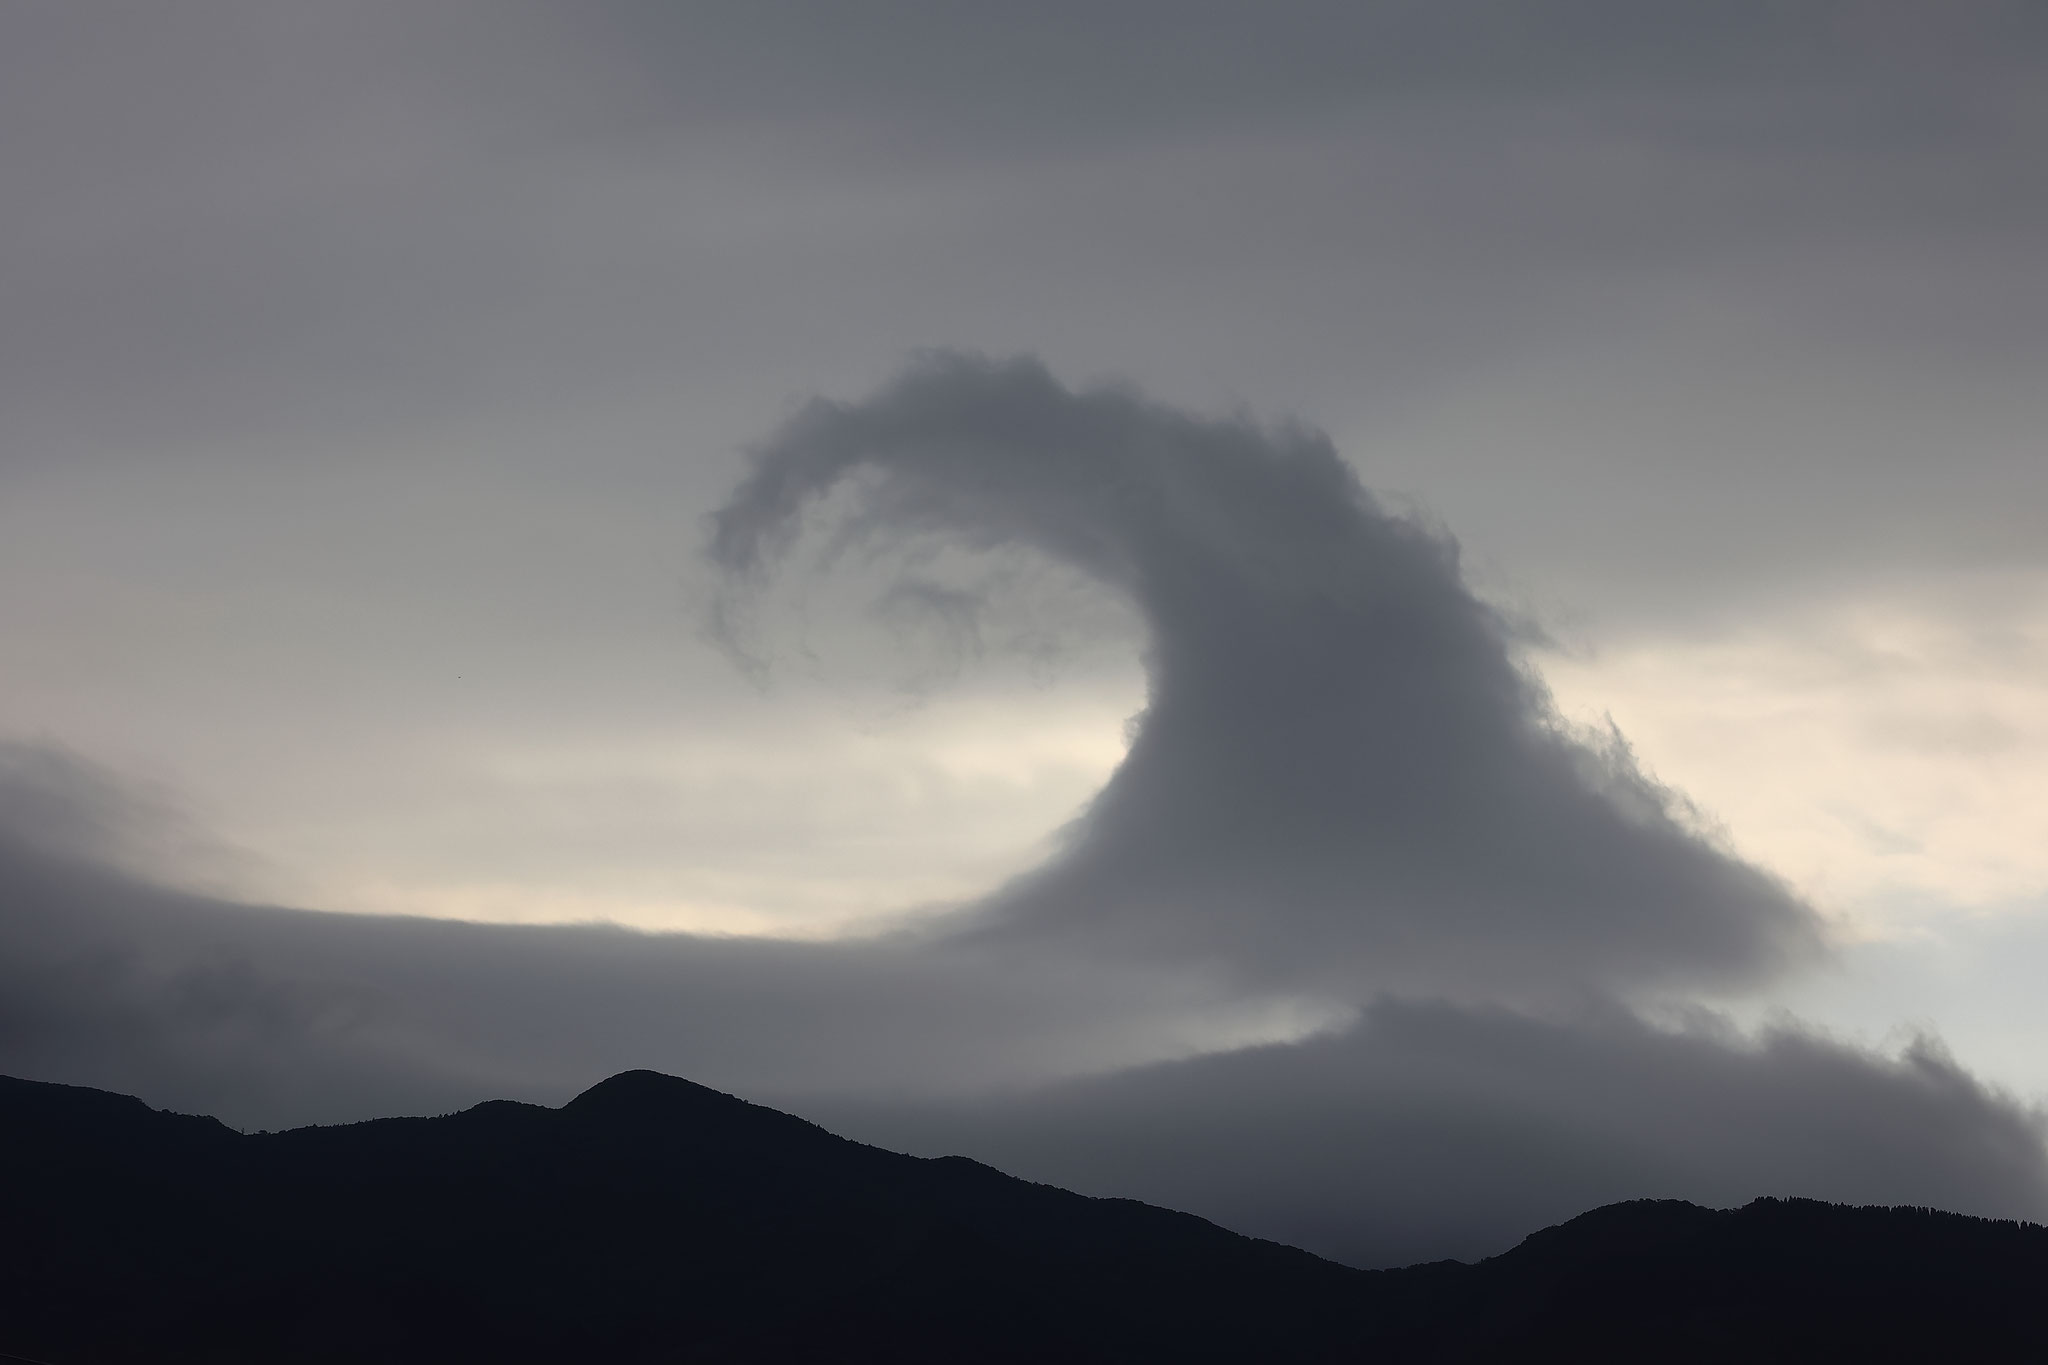 曇天の空に波のような雲が(1月22日 東串良町)